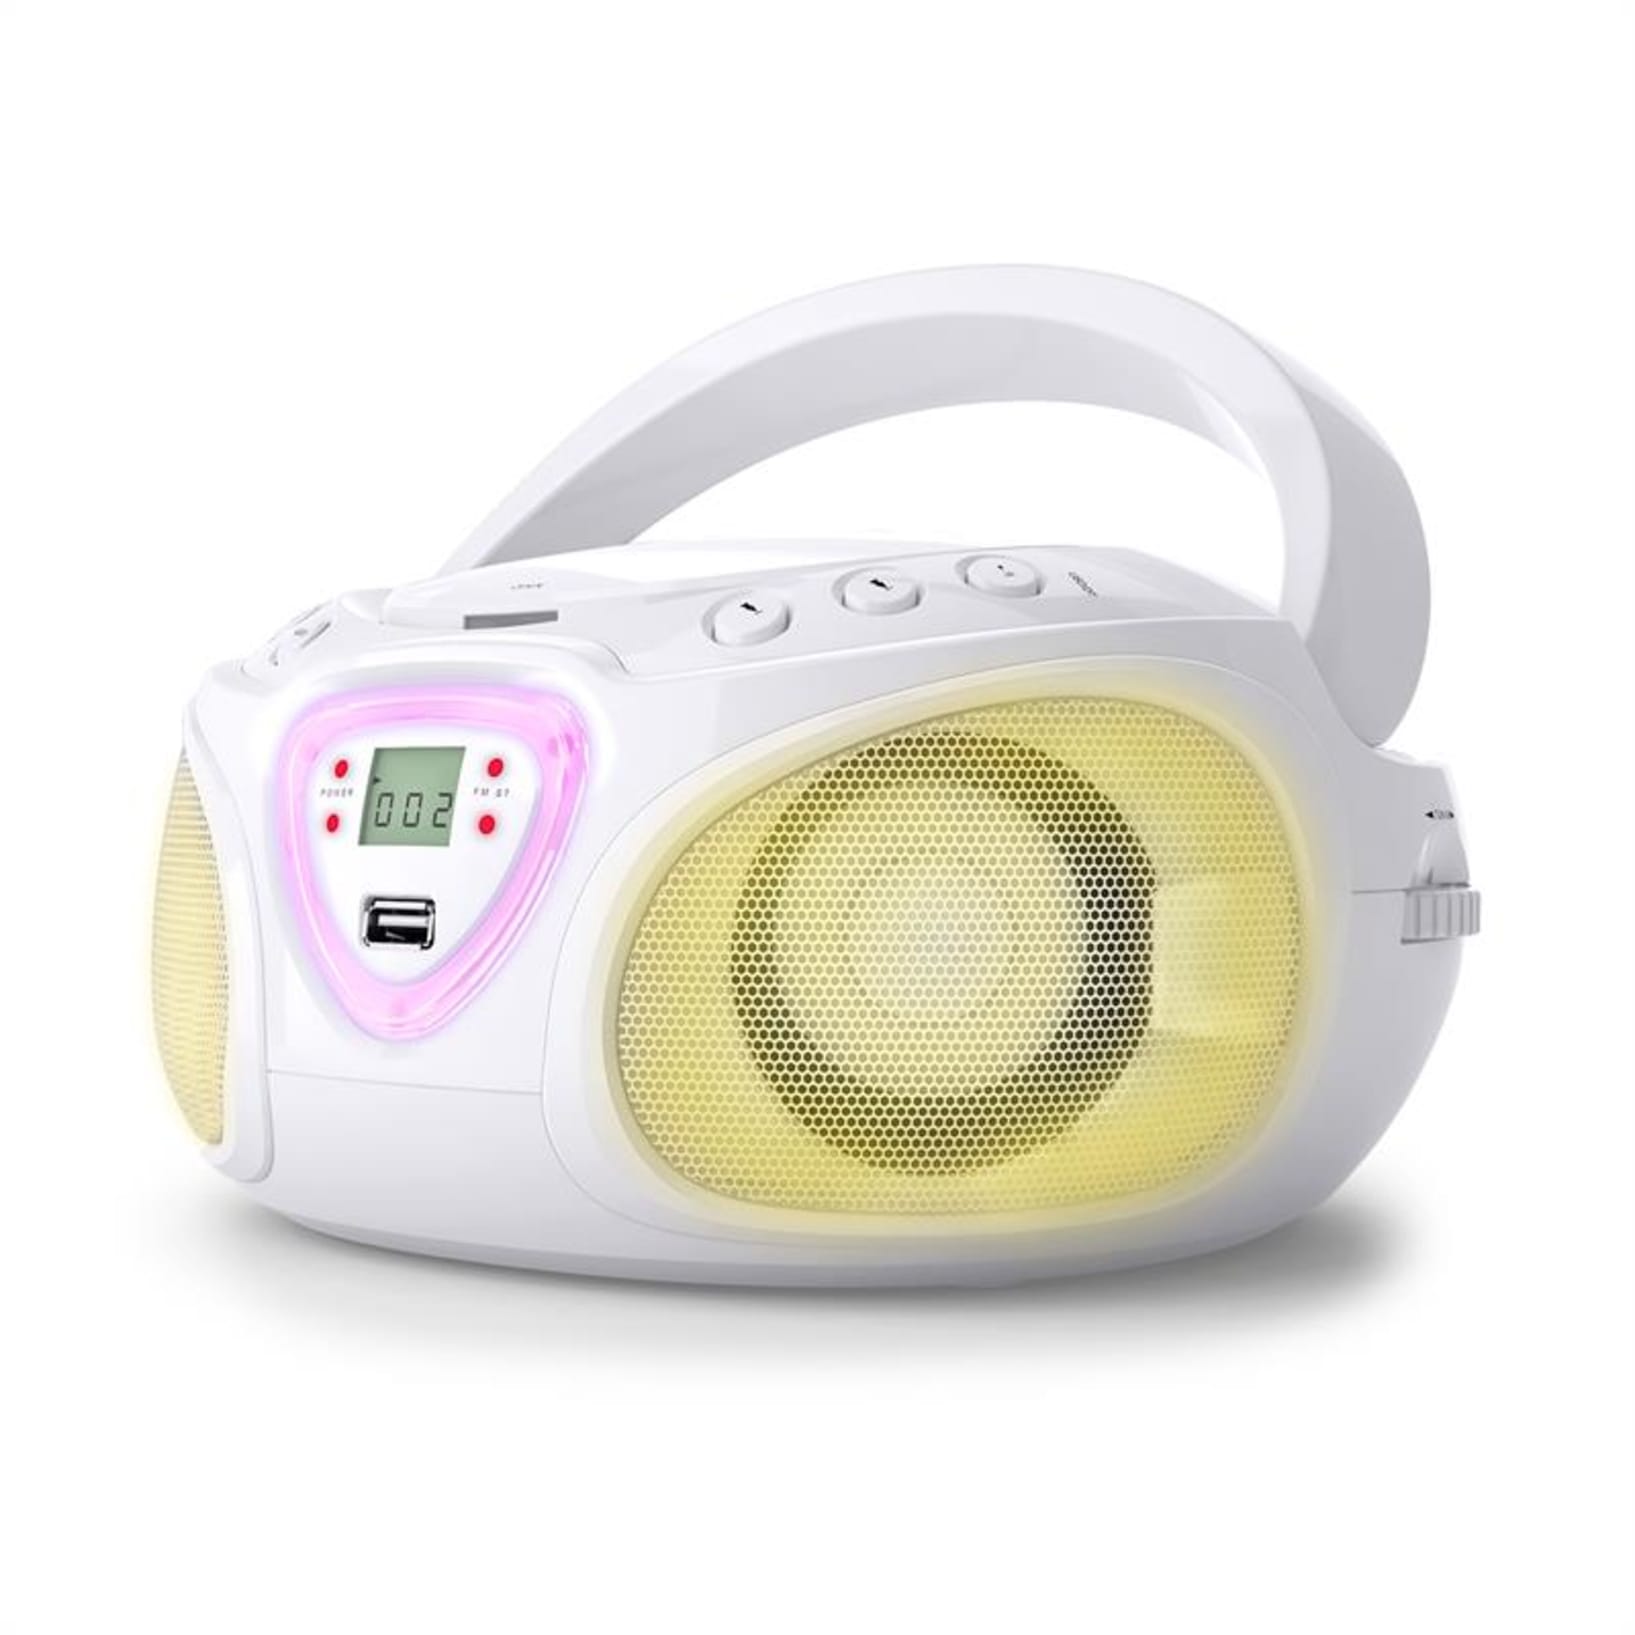 Roadie CD Boombox FM-radiolla ja valoshow'lla | CD-soitin | FM-radio |  Bluetooth  | LED-diskovalotehoste | USB | AUX-In | 3,5 mm:n  plugiliitäntä kuulokkeille | kannettava Valkoinen